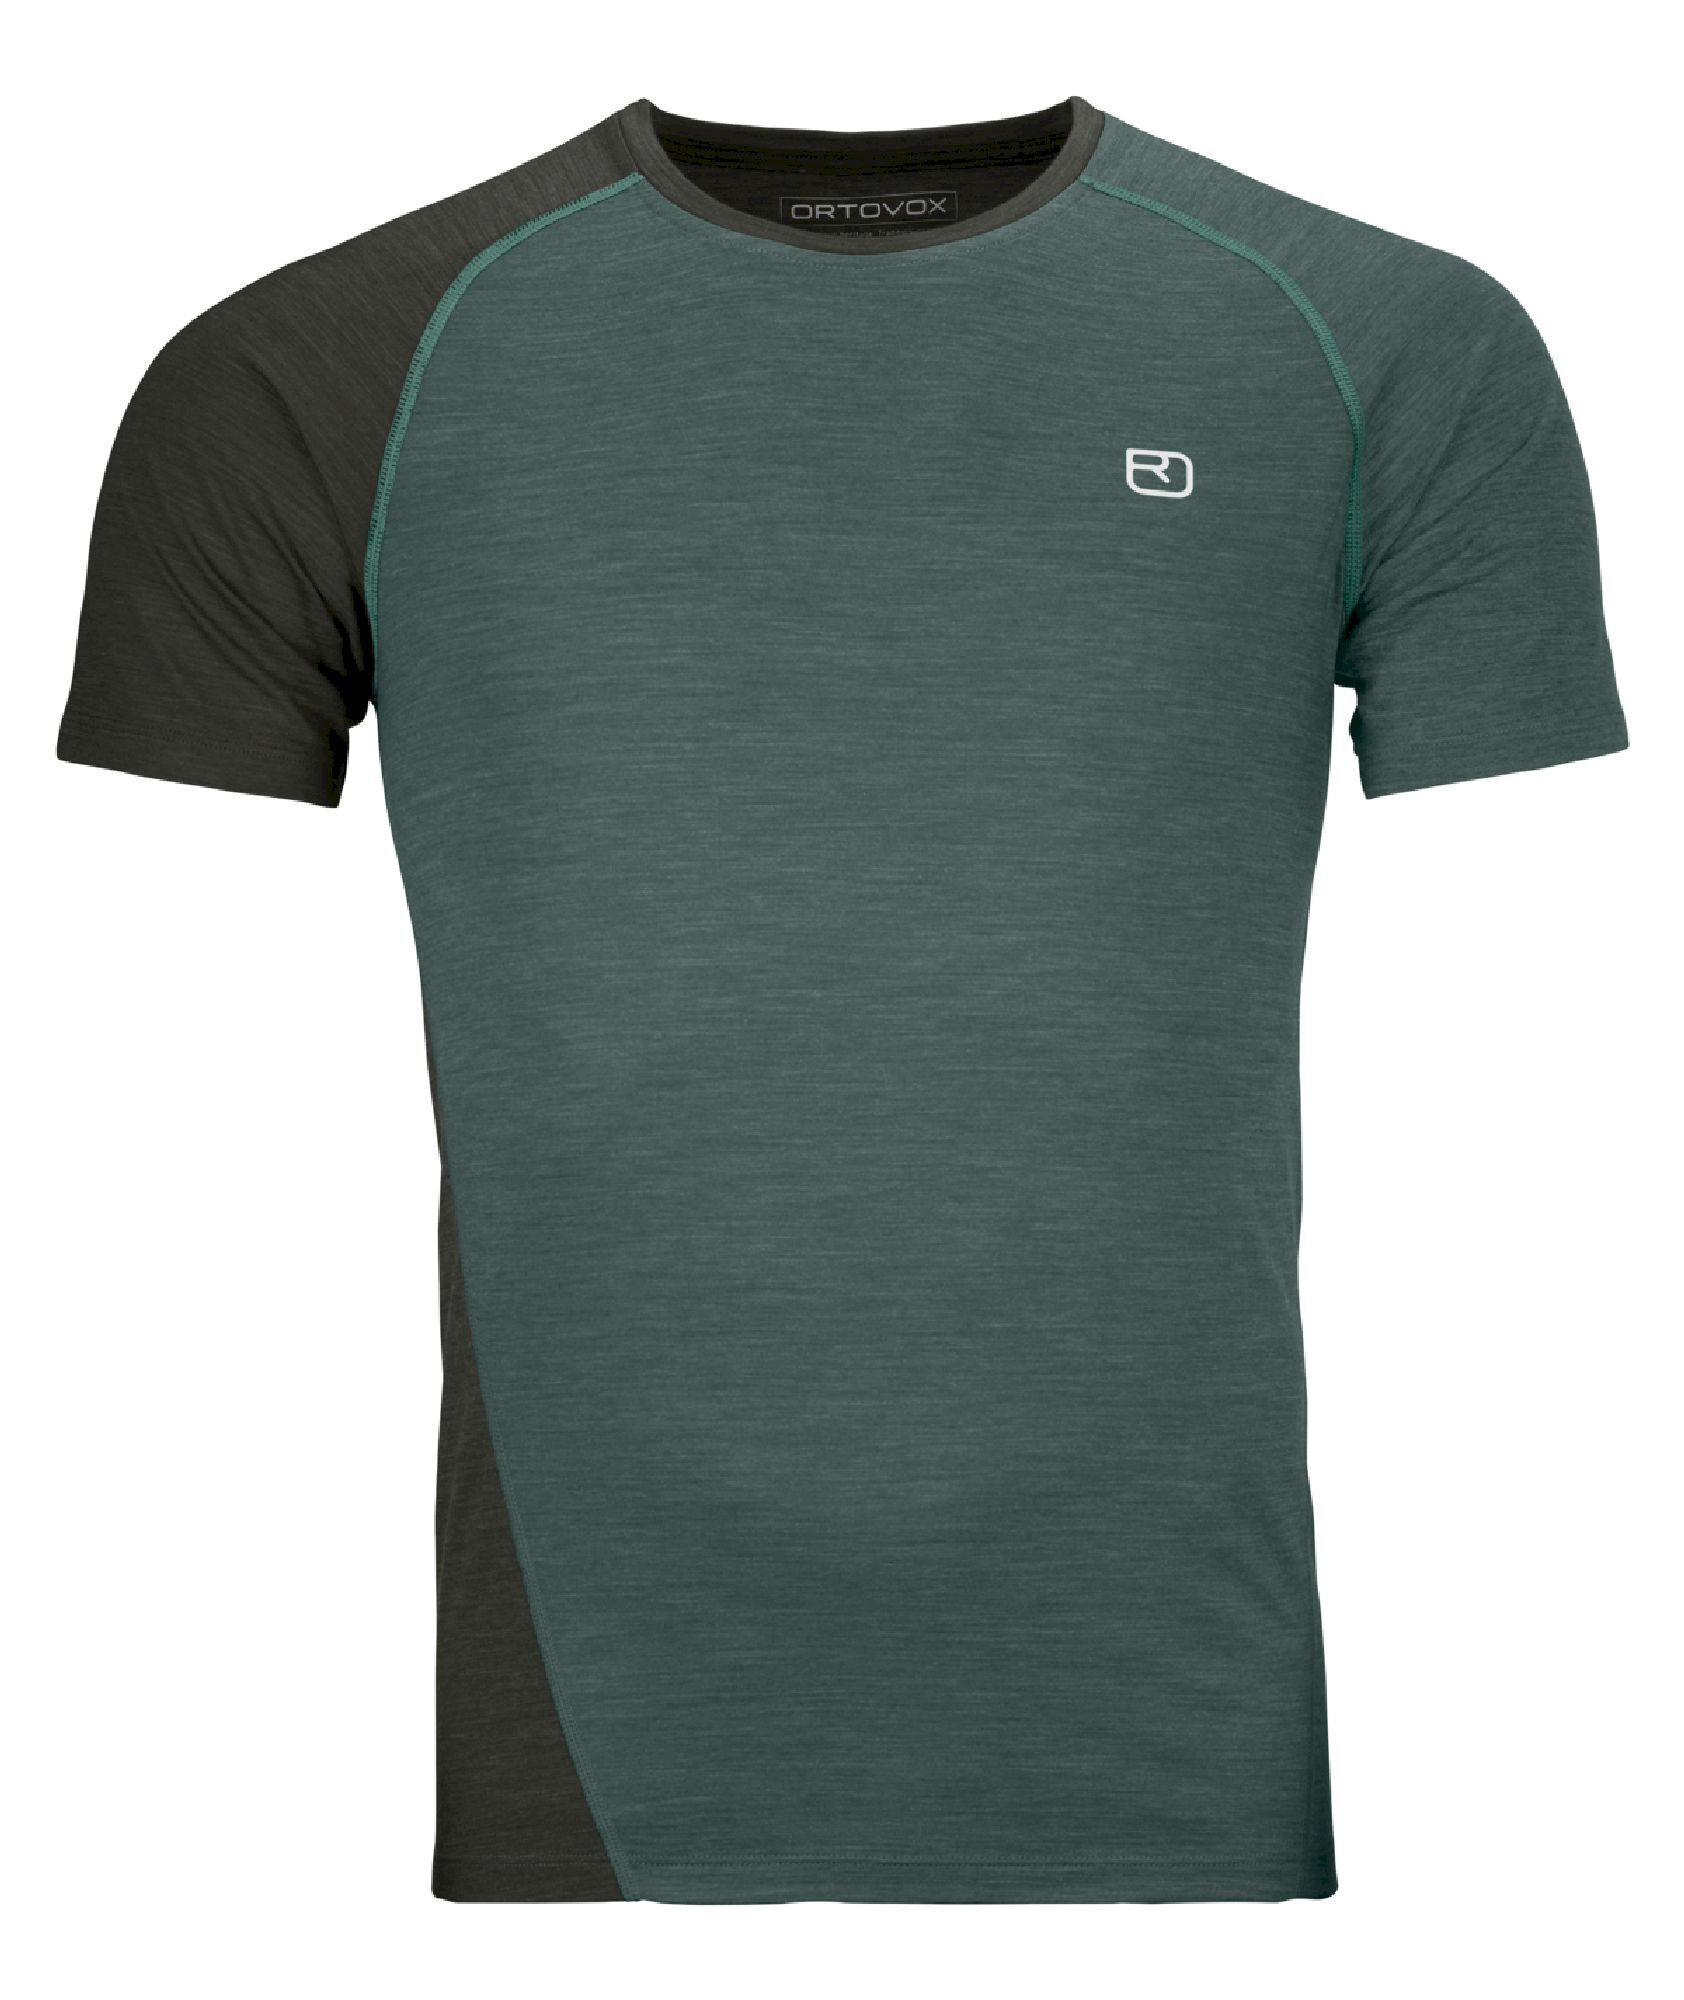 Ortovox 120 Cool Tec Fast Upward - T-shirt - Men's